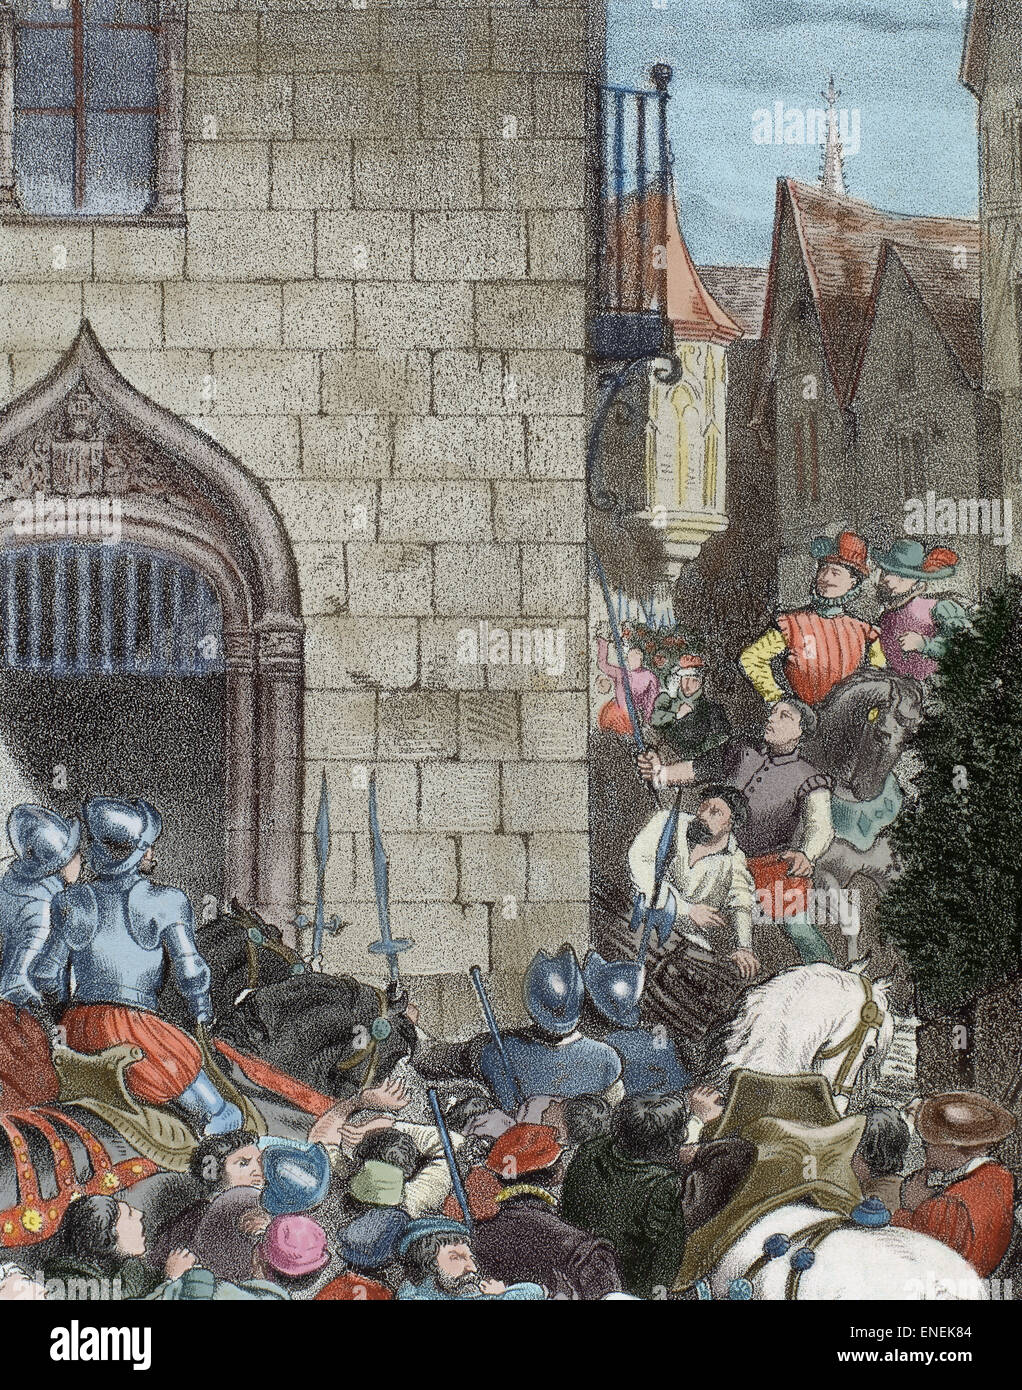 Alterazioni di Aragona. Ammutinamento di Saragozza, 1591. Incisione di Historia de Espana. Xix secolo. Colorati. Foto Stock